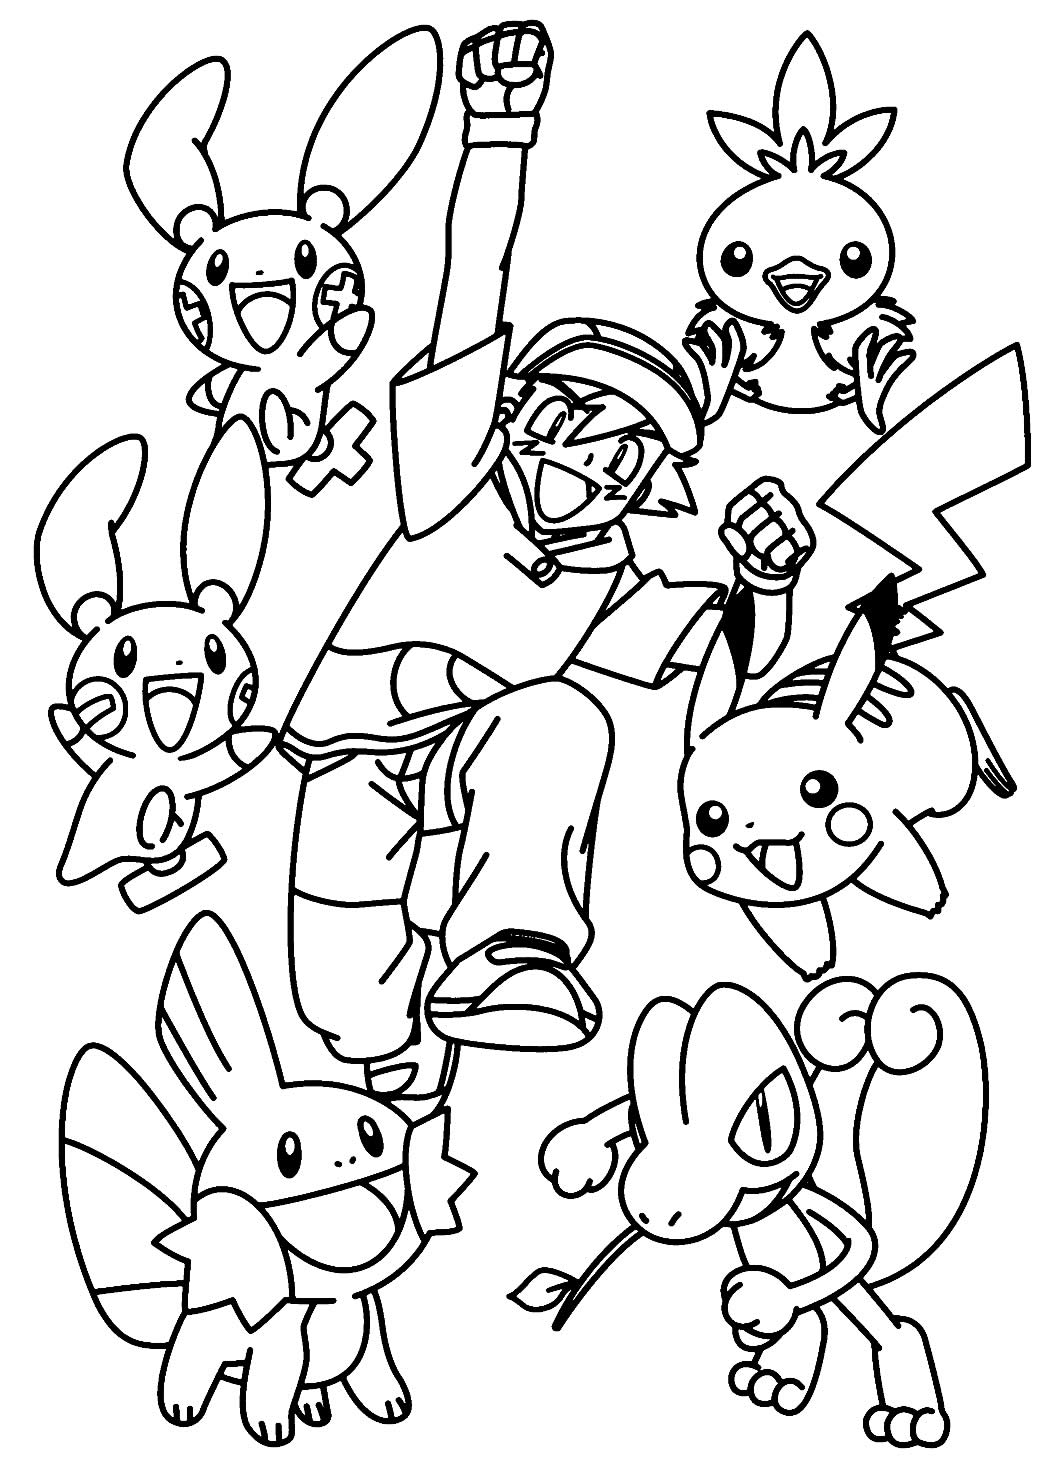 Desenhos Do Pokemon Para Imprimir E Colorir 19 Fichas E Atividades 8773